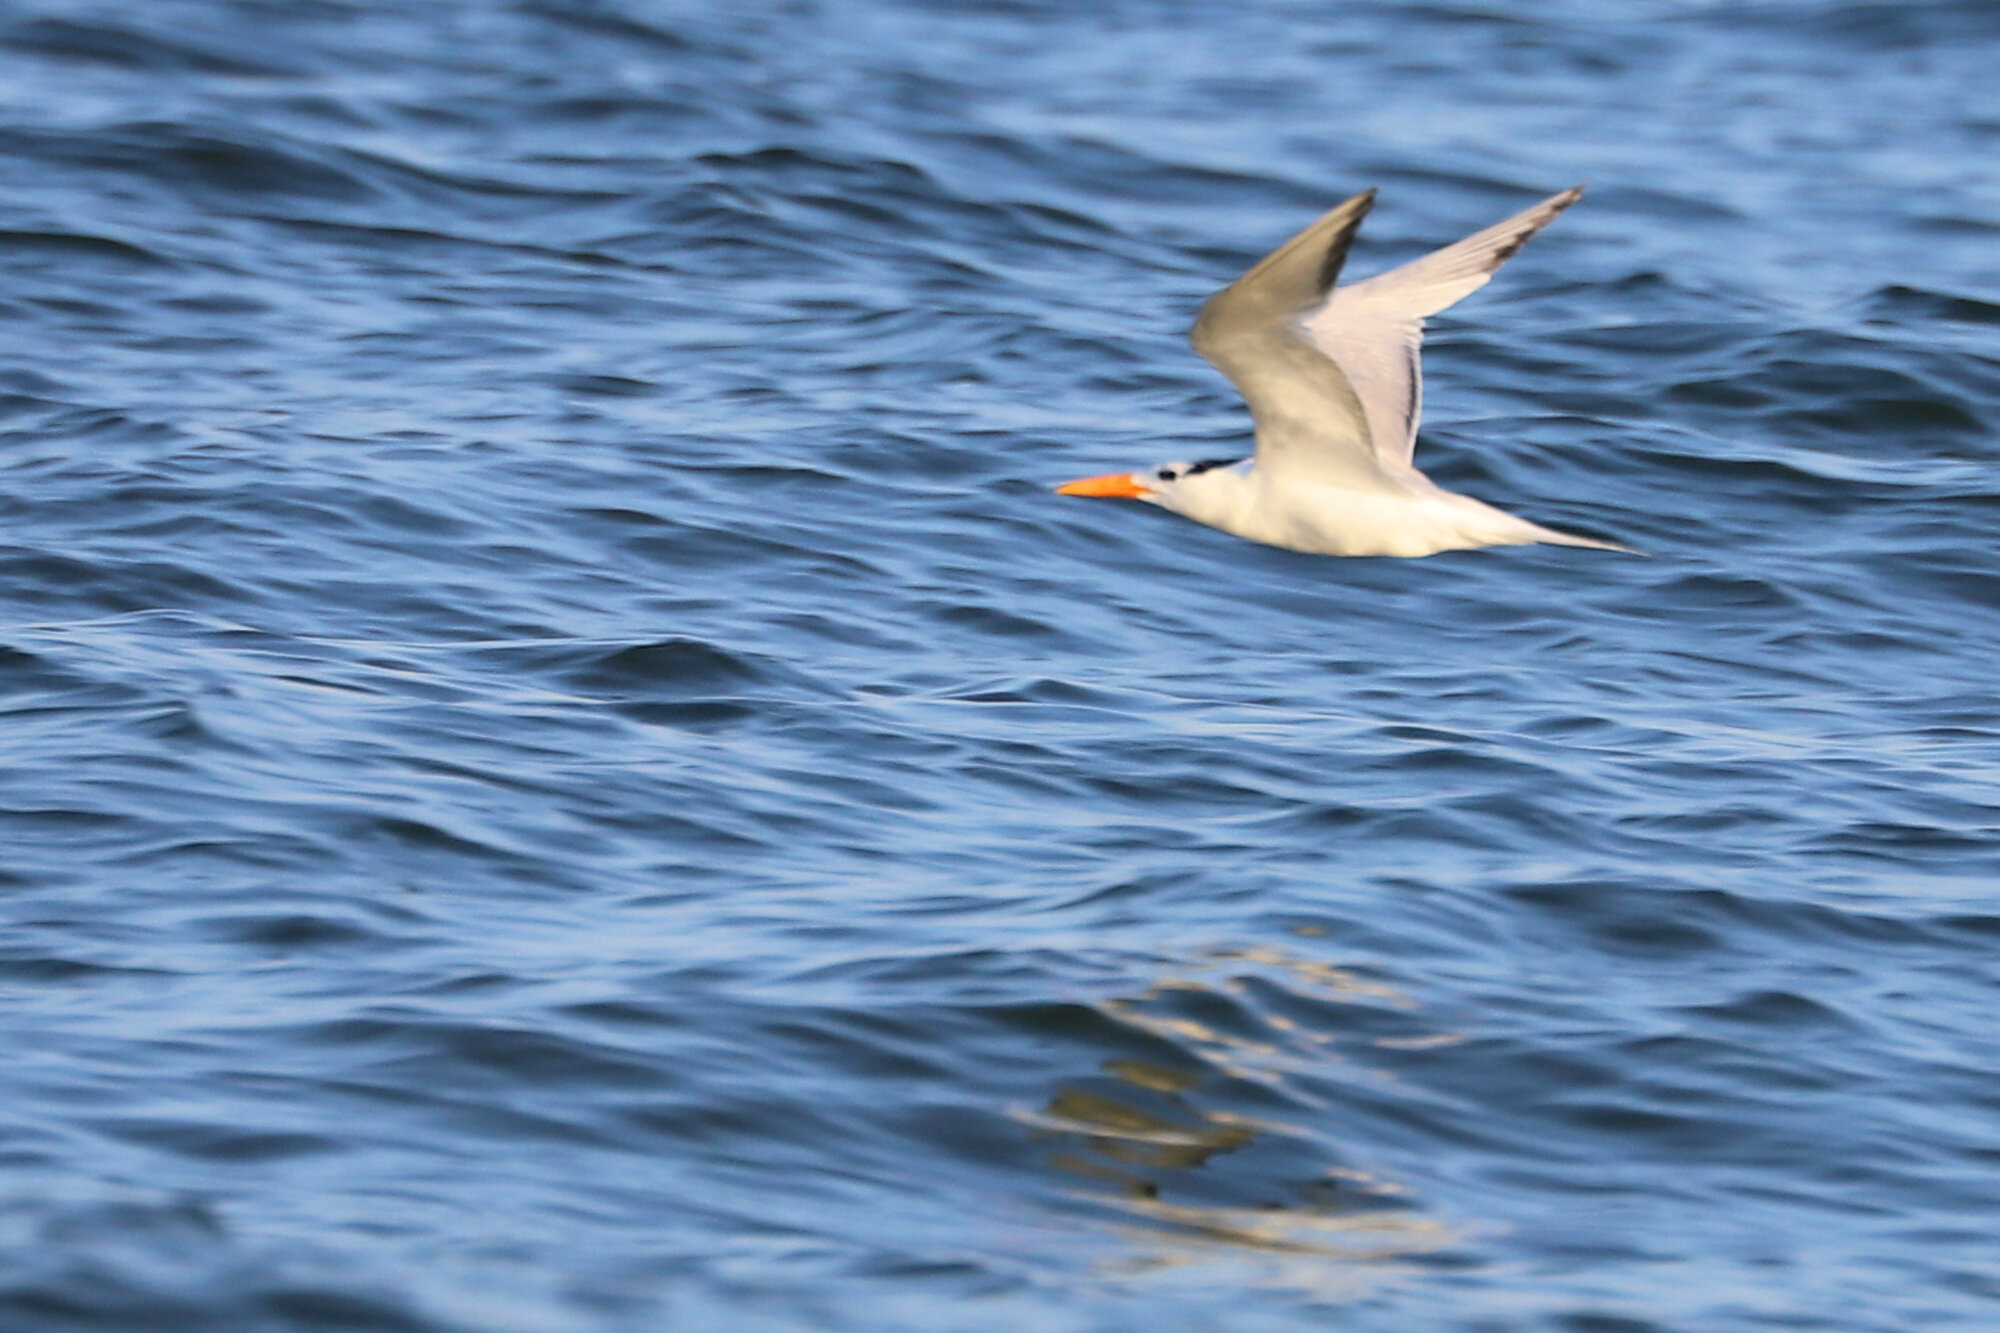  Royal Tern / First Landing SP / 18 Jul 